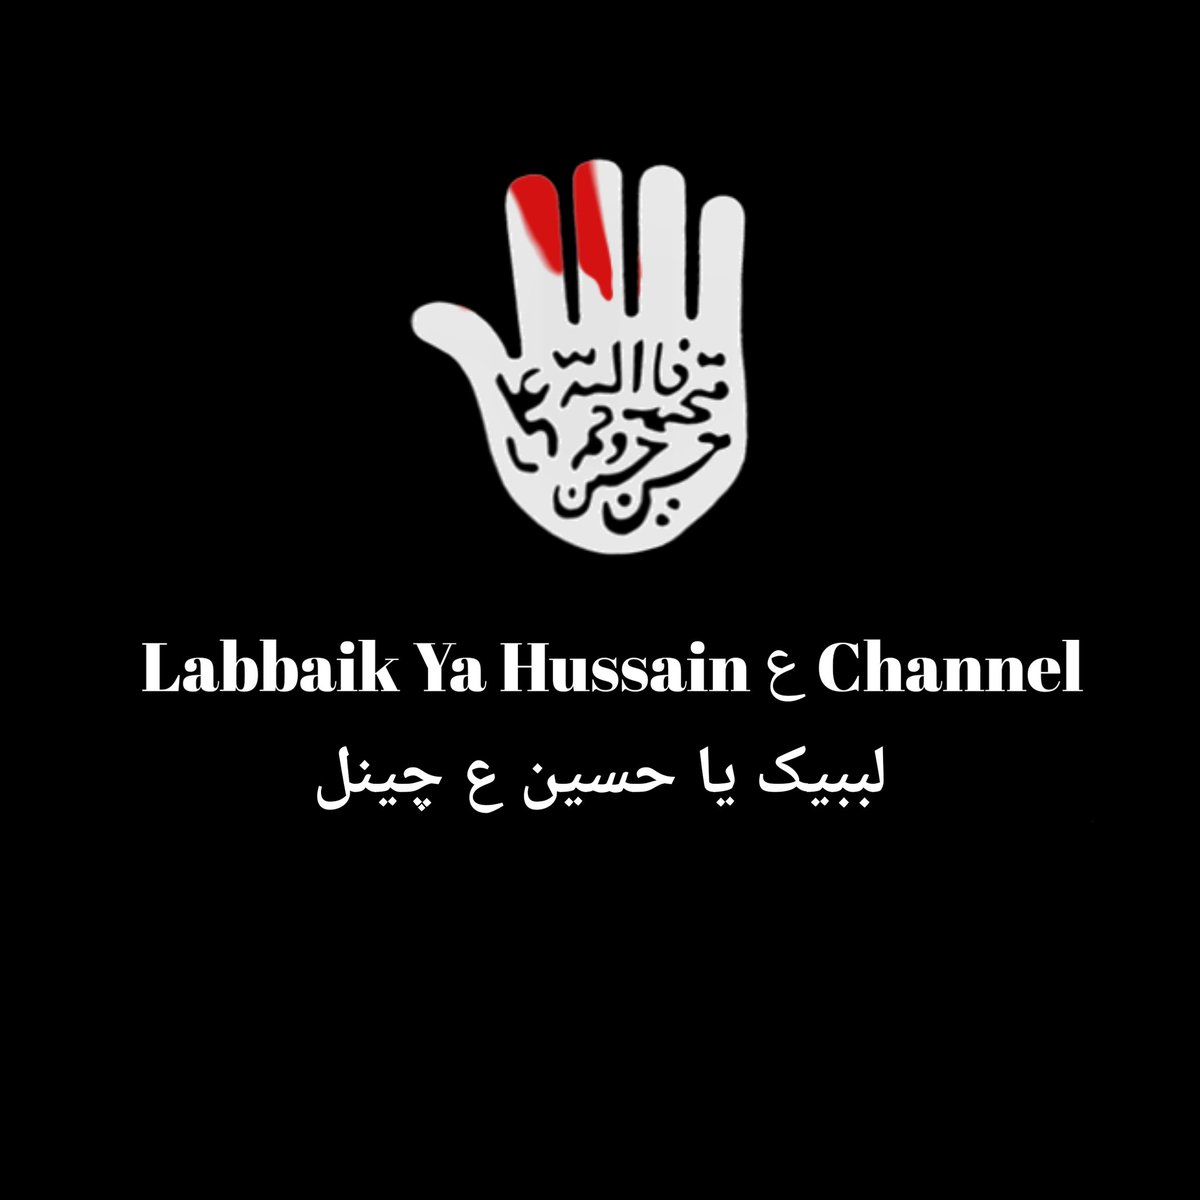 LABBAIK YA HUSSAIN ع CHANNEL on Twitter: 